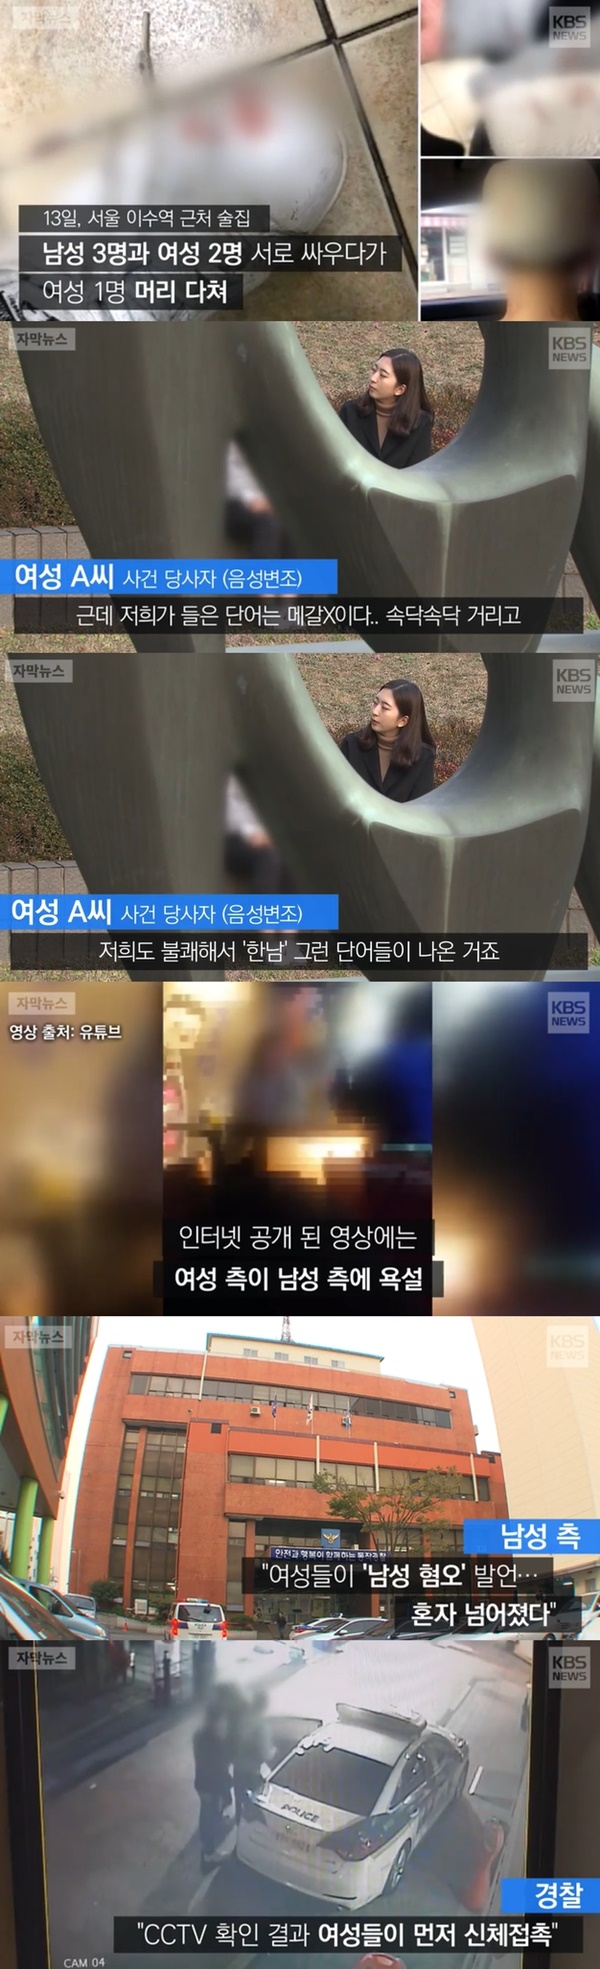 논쟁 이어지는 이수역 폭행 사건 (사진: KBS 뉴스)